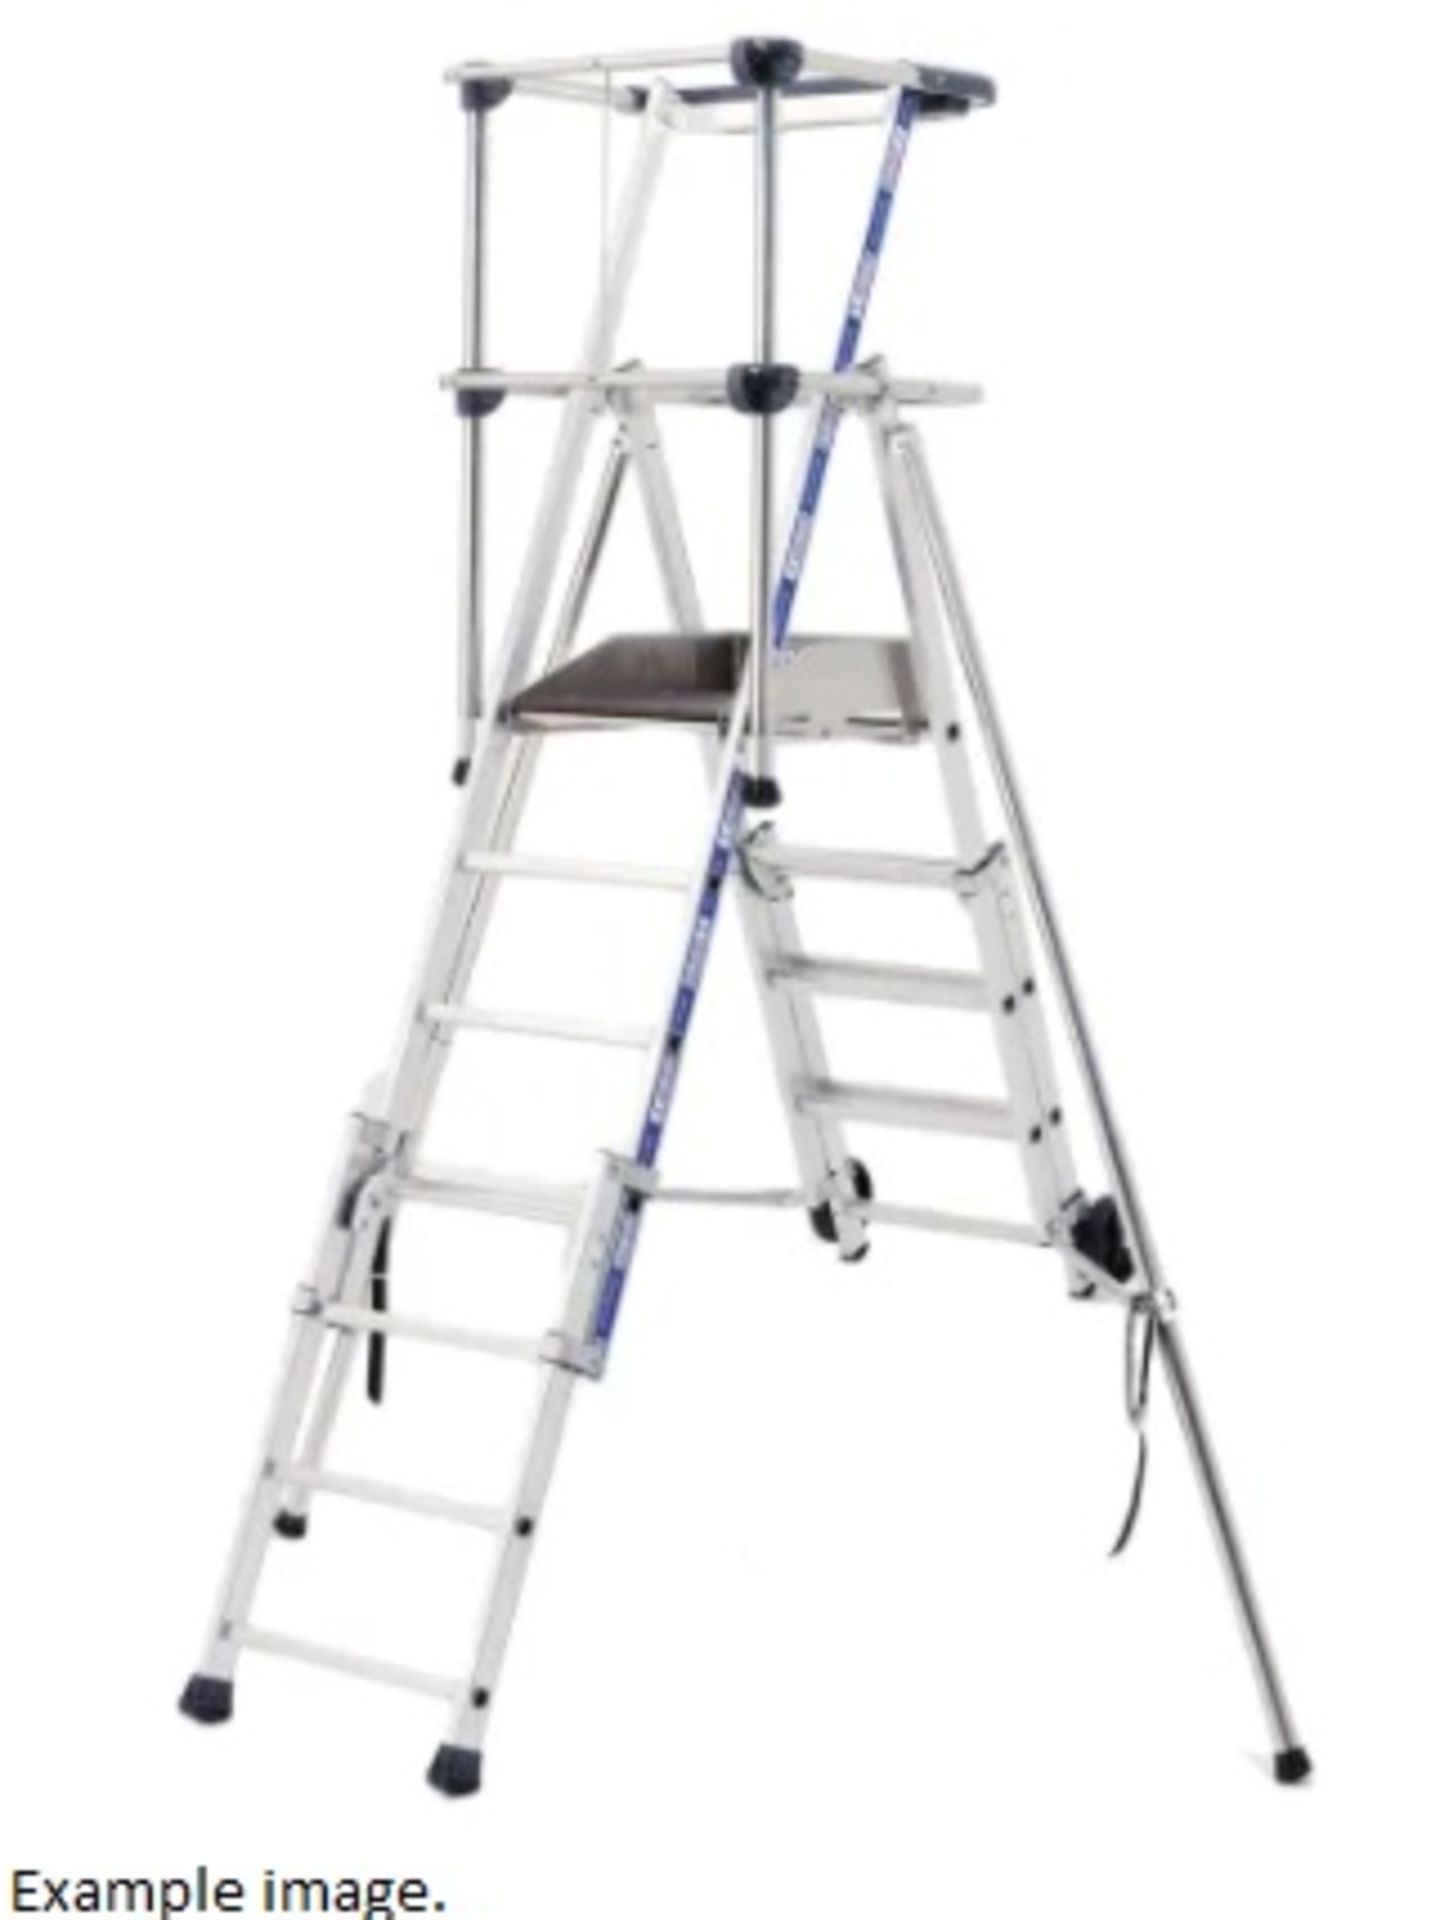 1 x Tubesca Sharpascopic Work Platform Ladder Type 02272251 Platform Height 1.07 to 1.53m